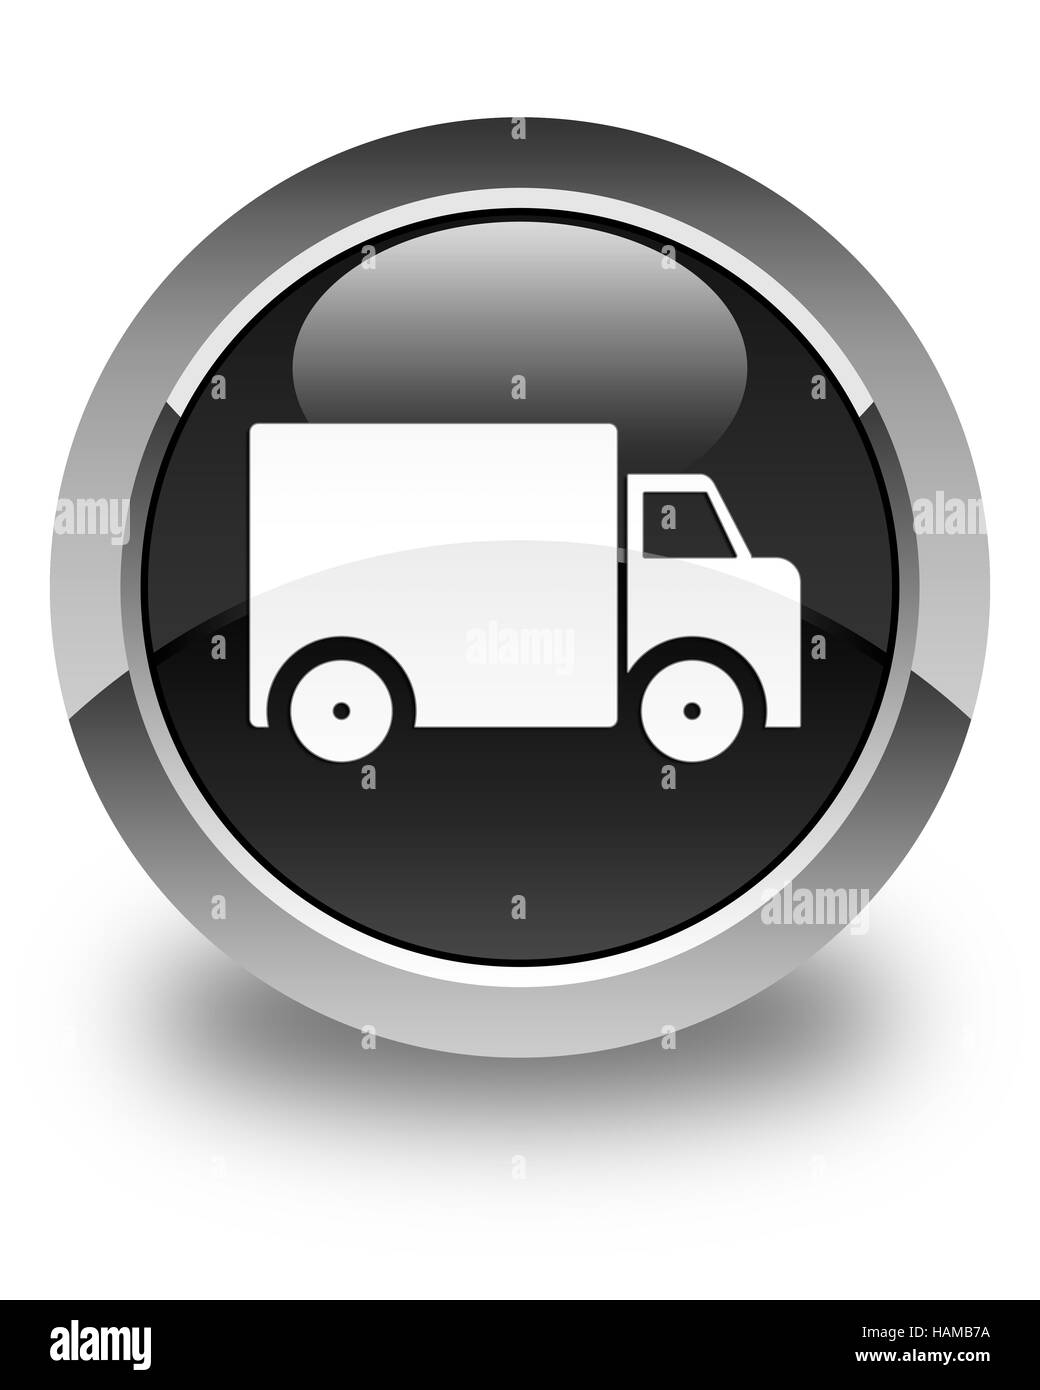 Camion de livraison isolé sur l'icône bouton rond noir brillant abstract illustration Banque D'Images